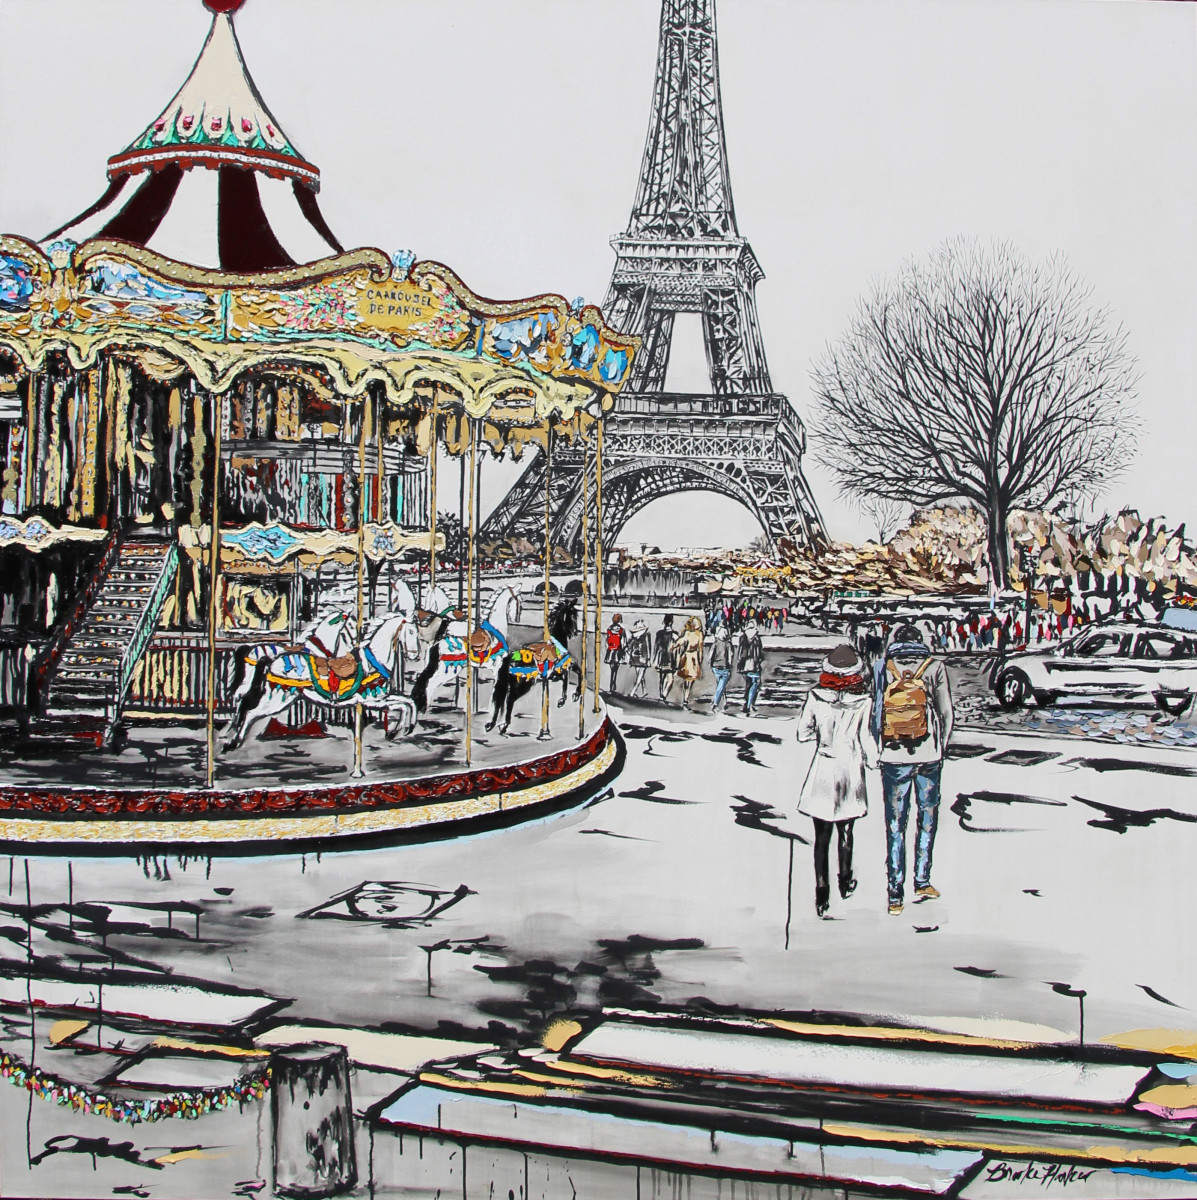 La Magie du Carrousel by Brooke Harker 